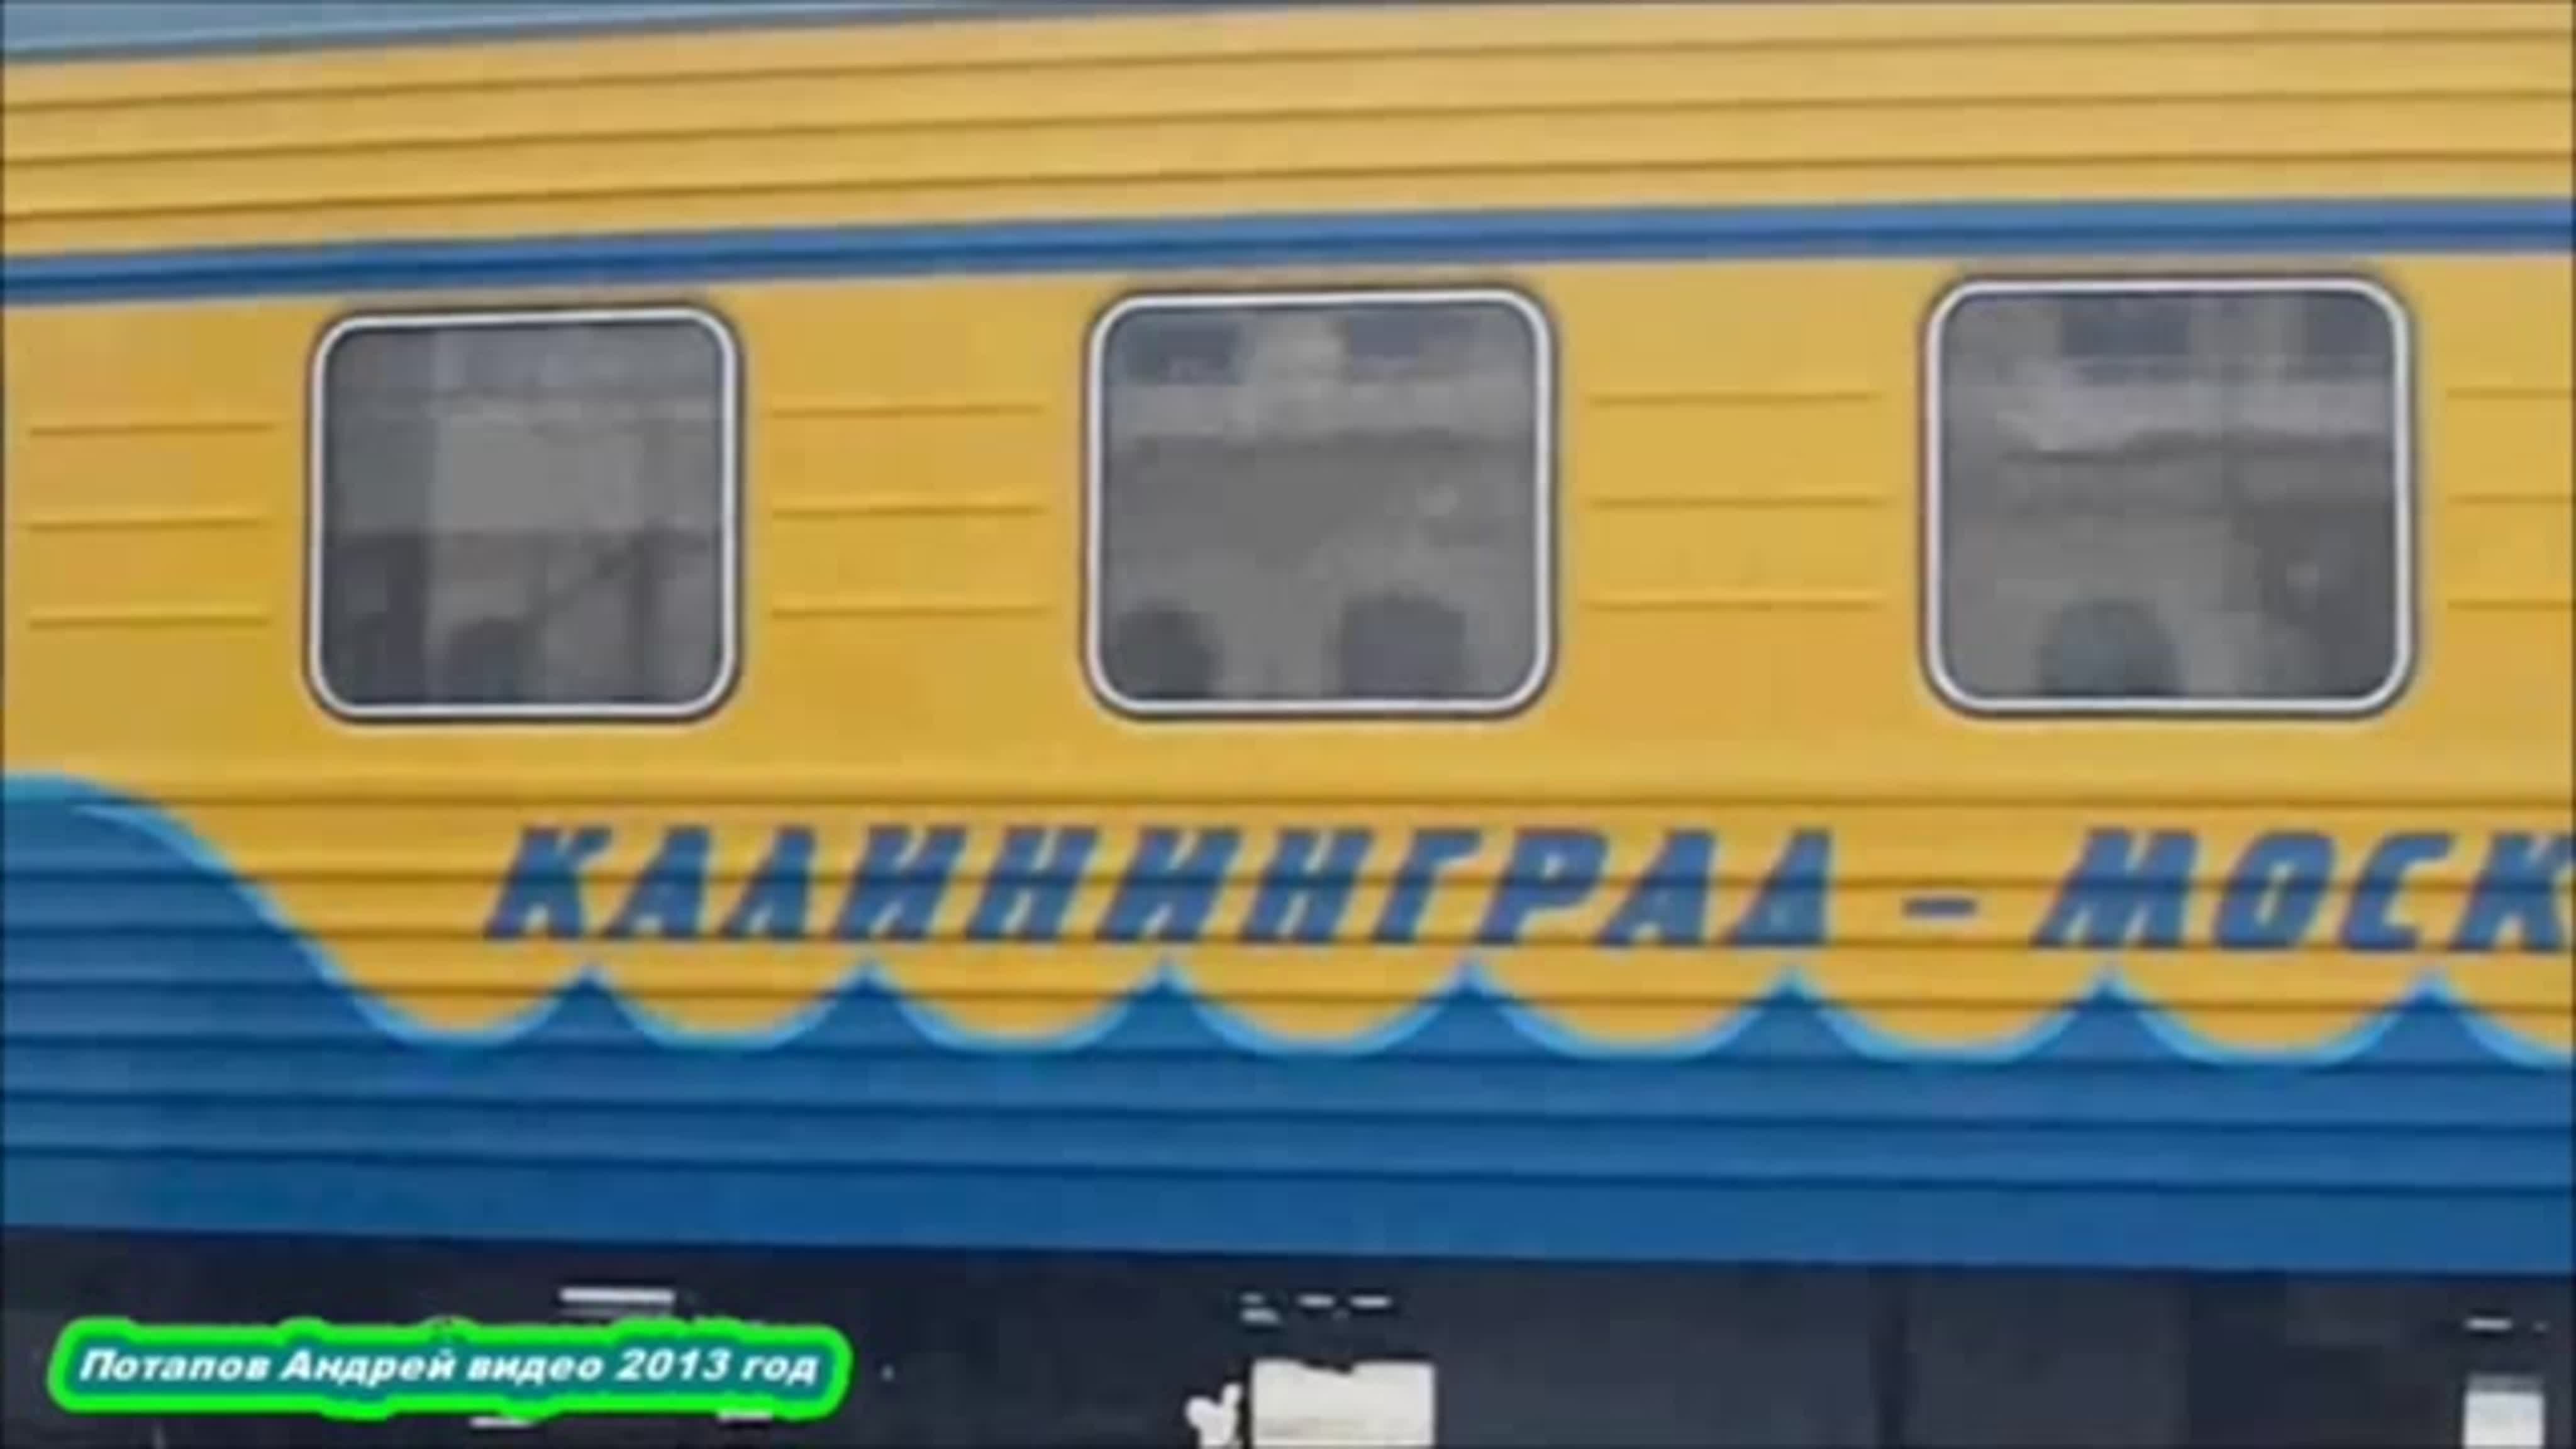 Поезд янтарь в Калининграде СССР